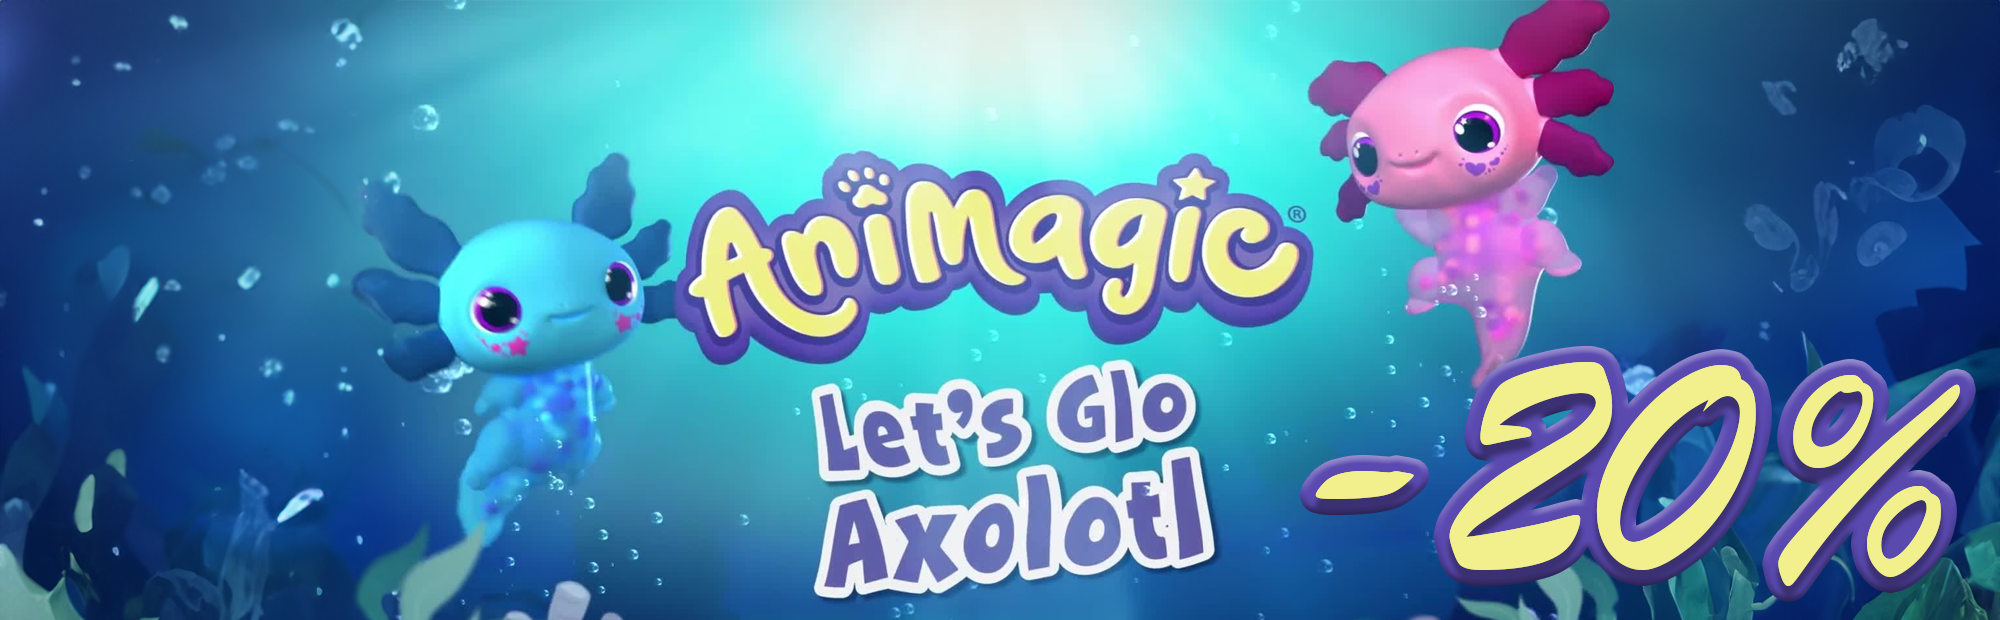 Banner Goliath - Scopri la magia di Animagic Axolotl